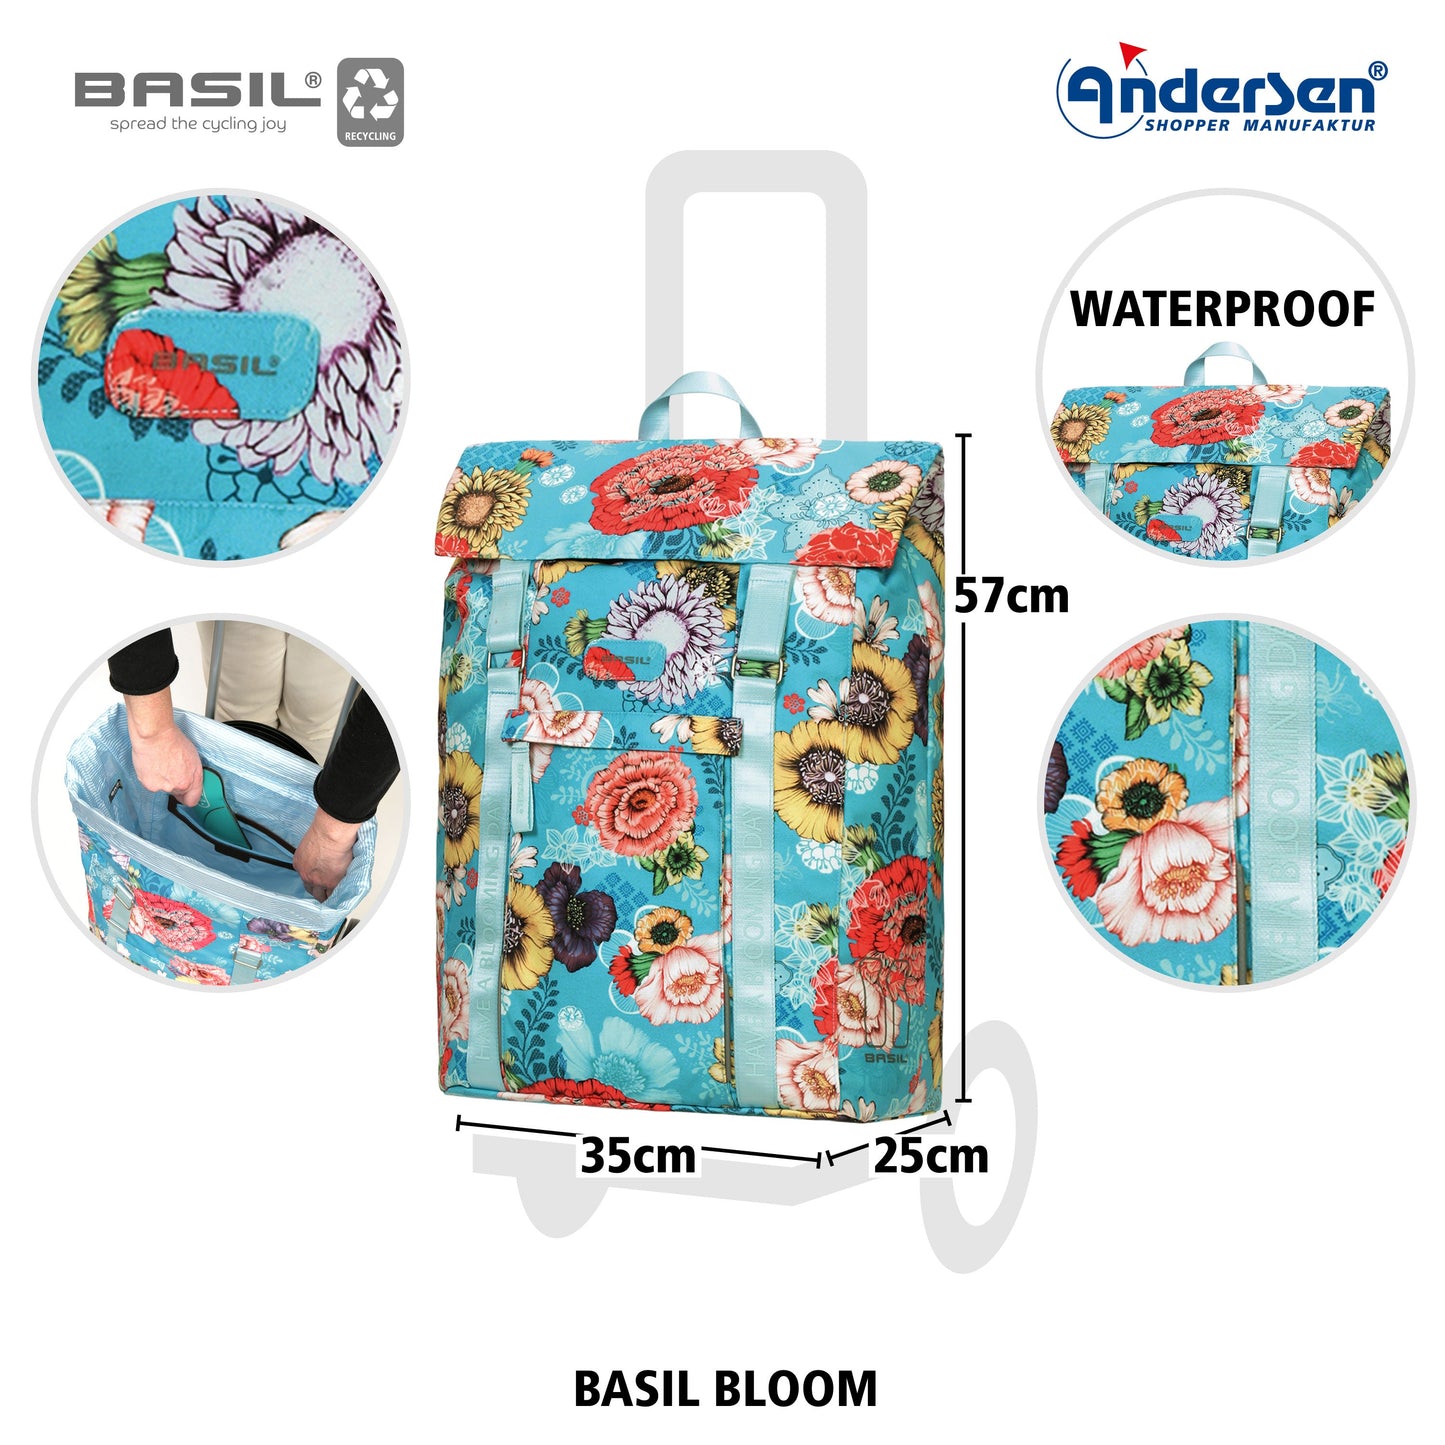 Andersen Shopper Manufaktur-Unus Shopper Basil Bloom blau-www.shopping-trolley.ch-bild4